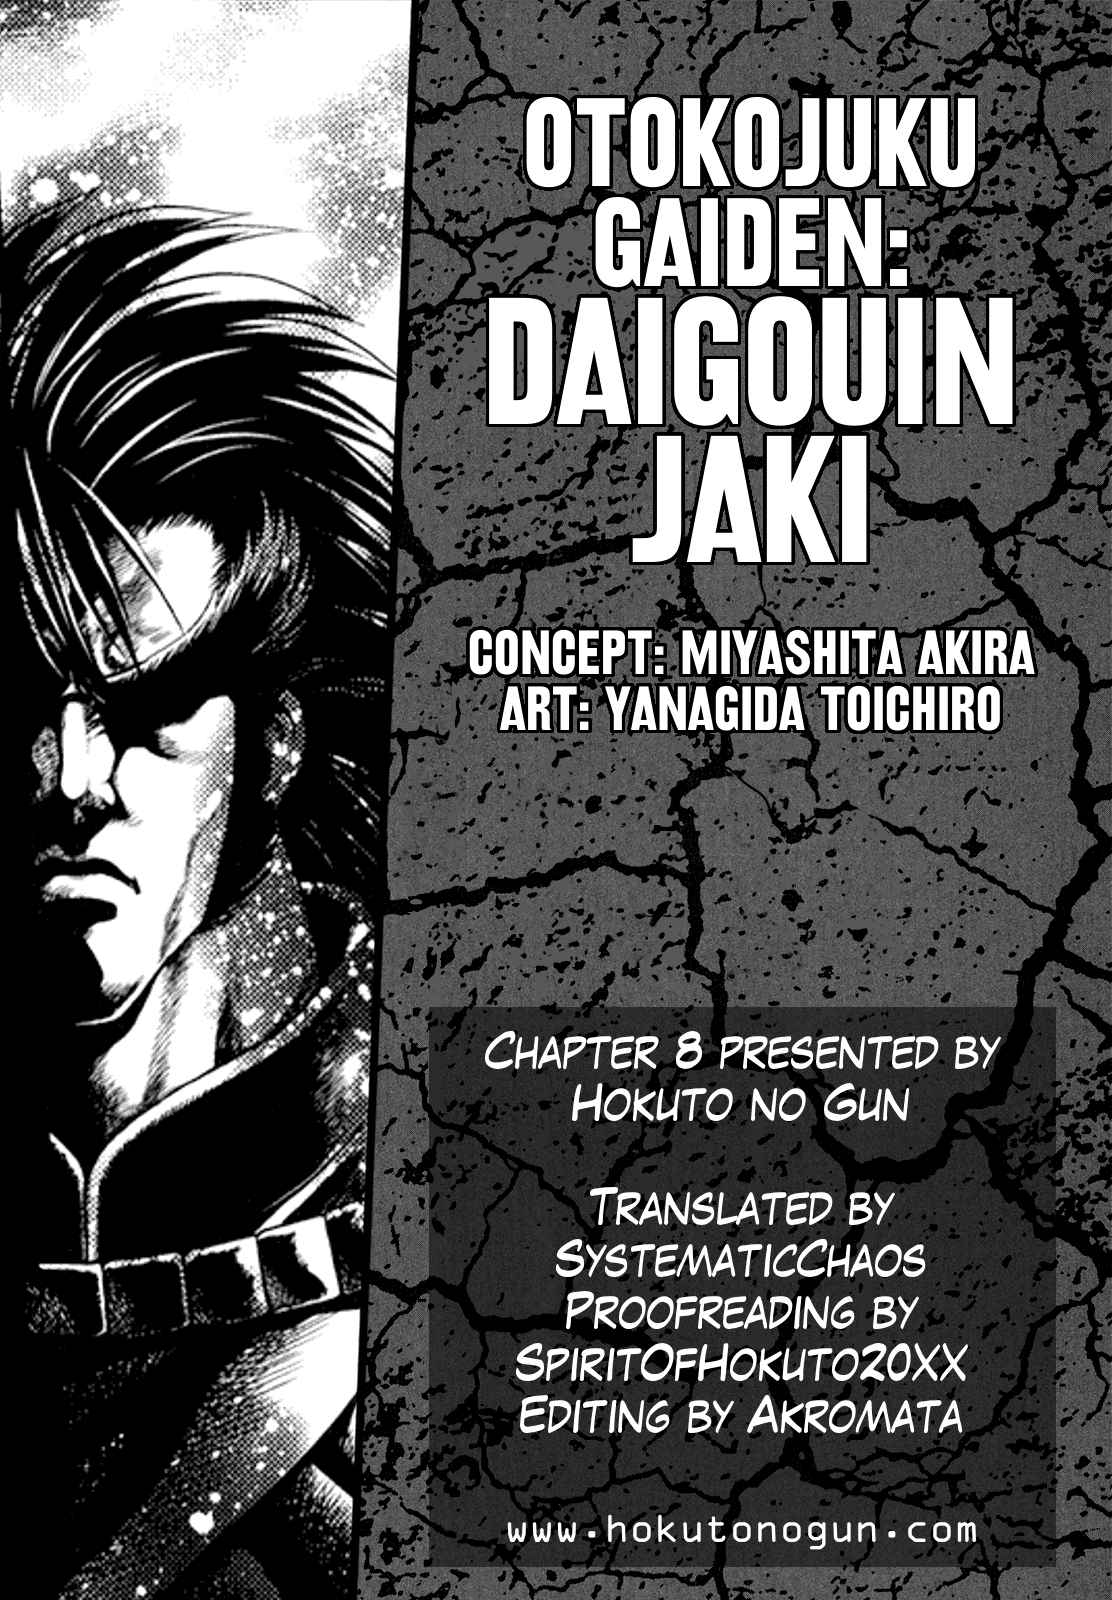 Otokojuku Gaiden Daigouin Jaki Vol. 2 Ch. 8